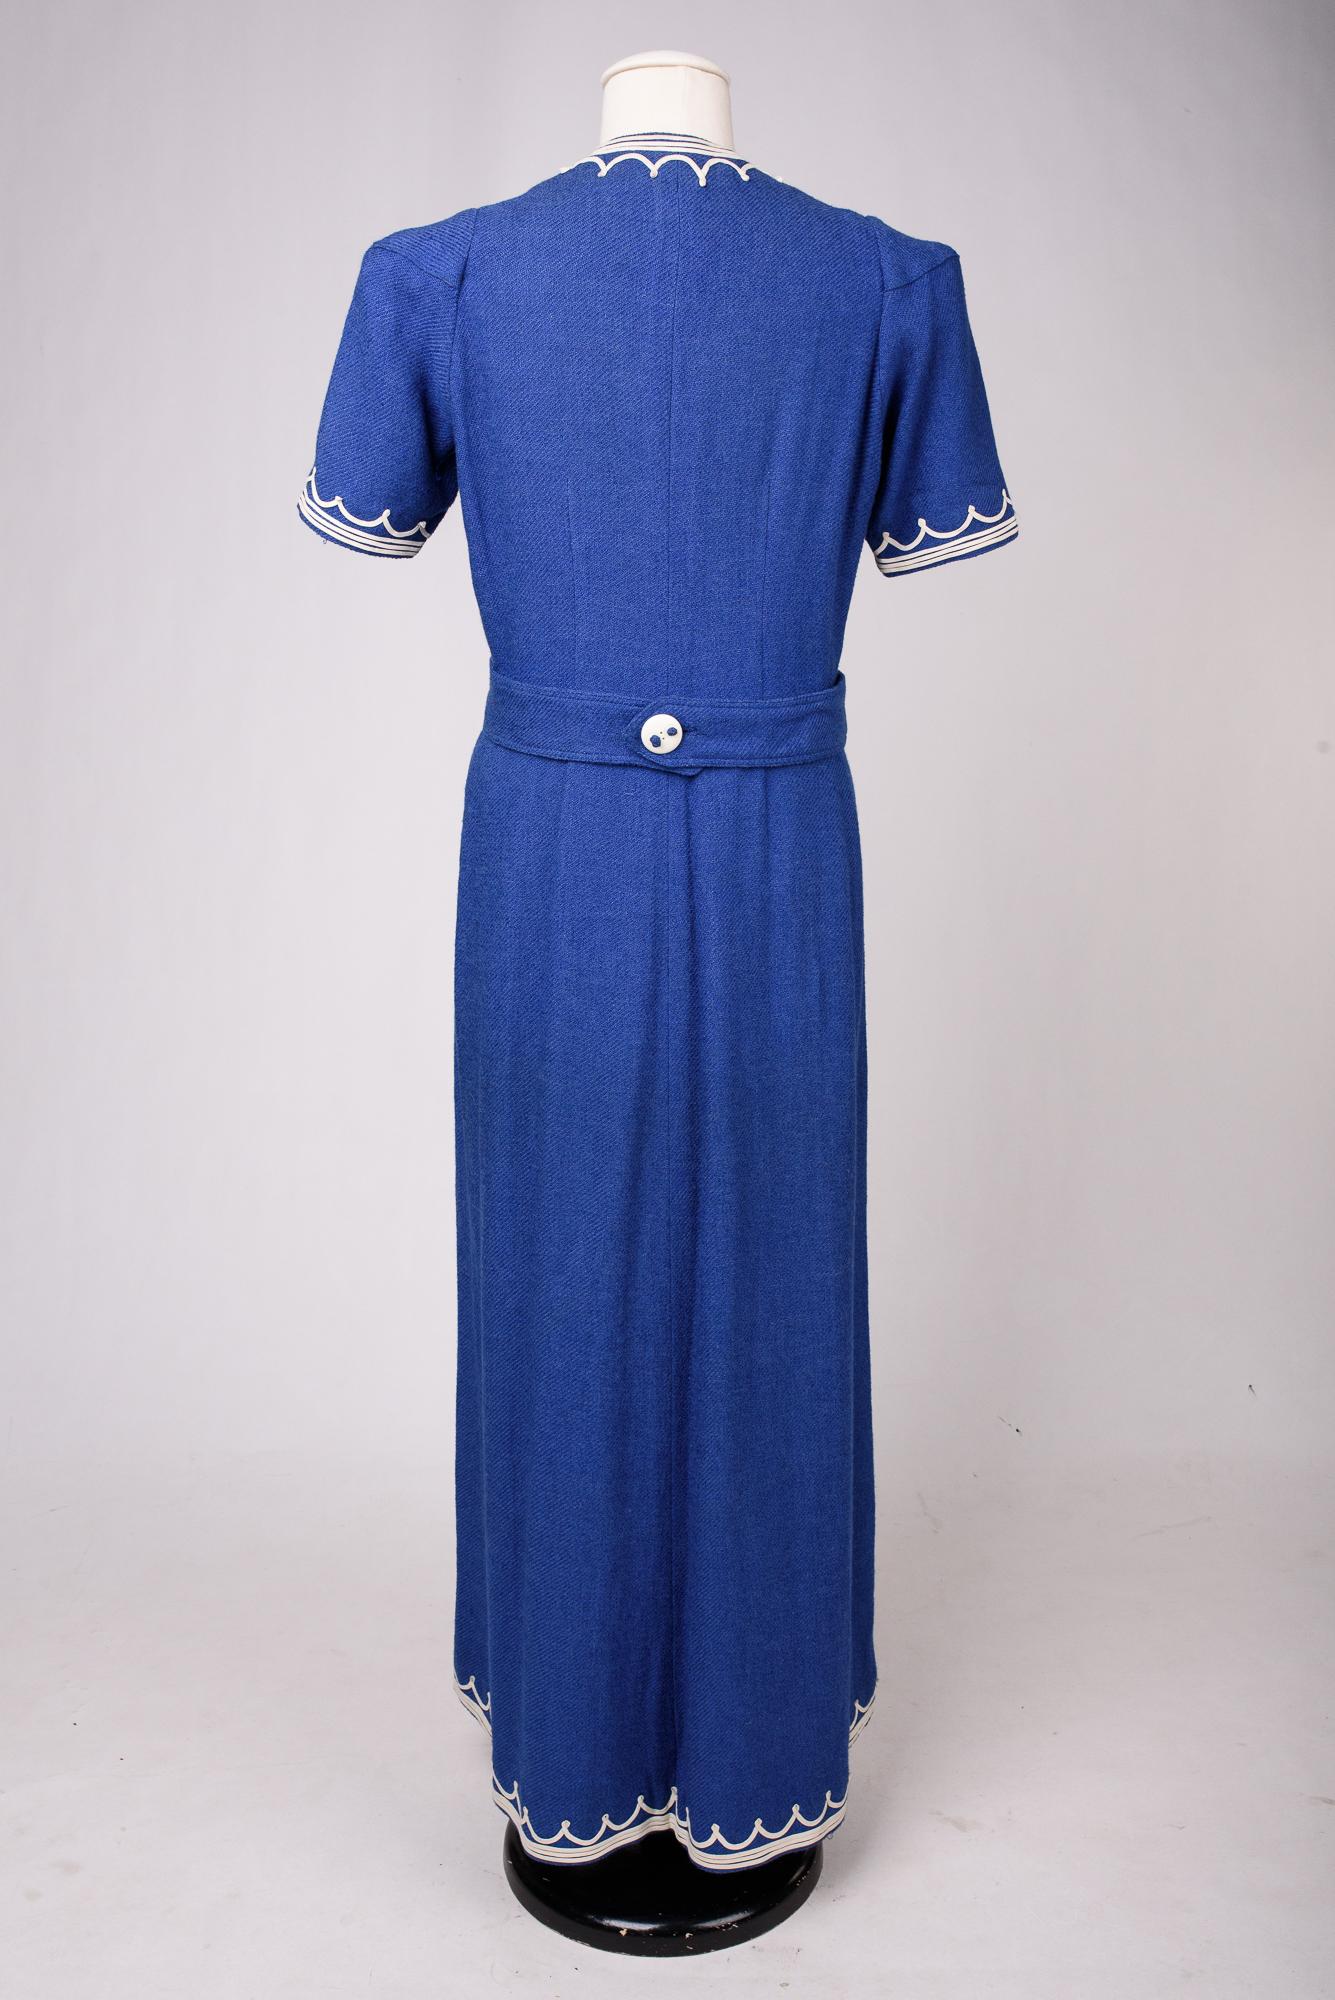 A Rare Blue Navy woollen dress by Henry à la Pensée - France Circa 1945 For Sale 8